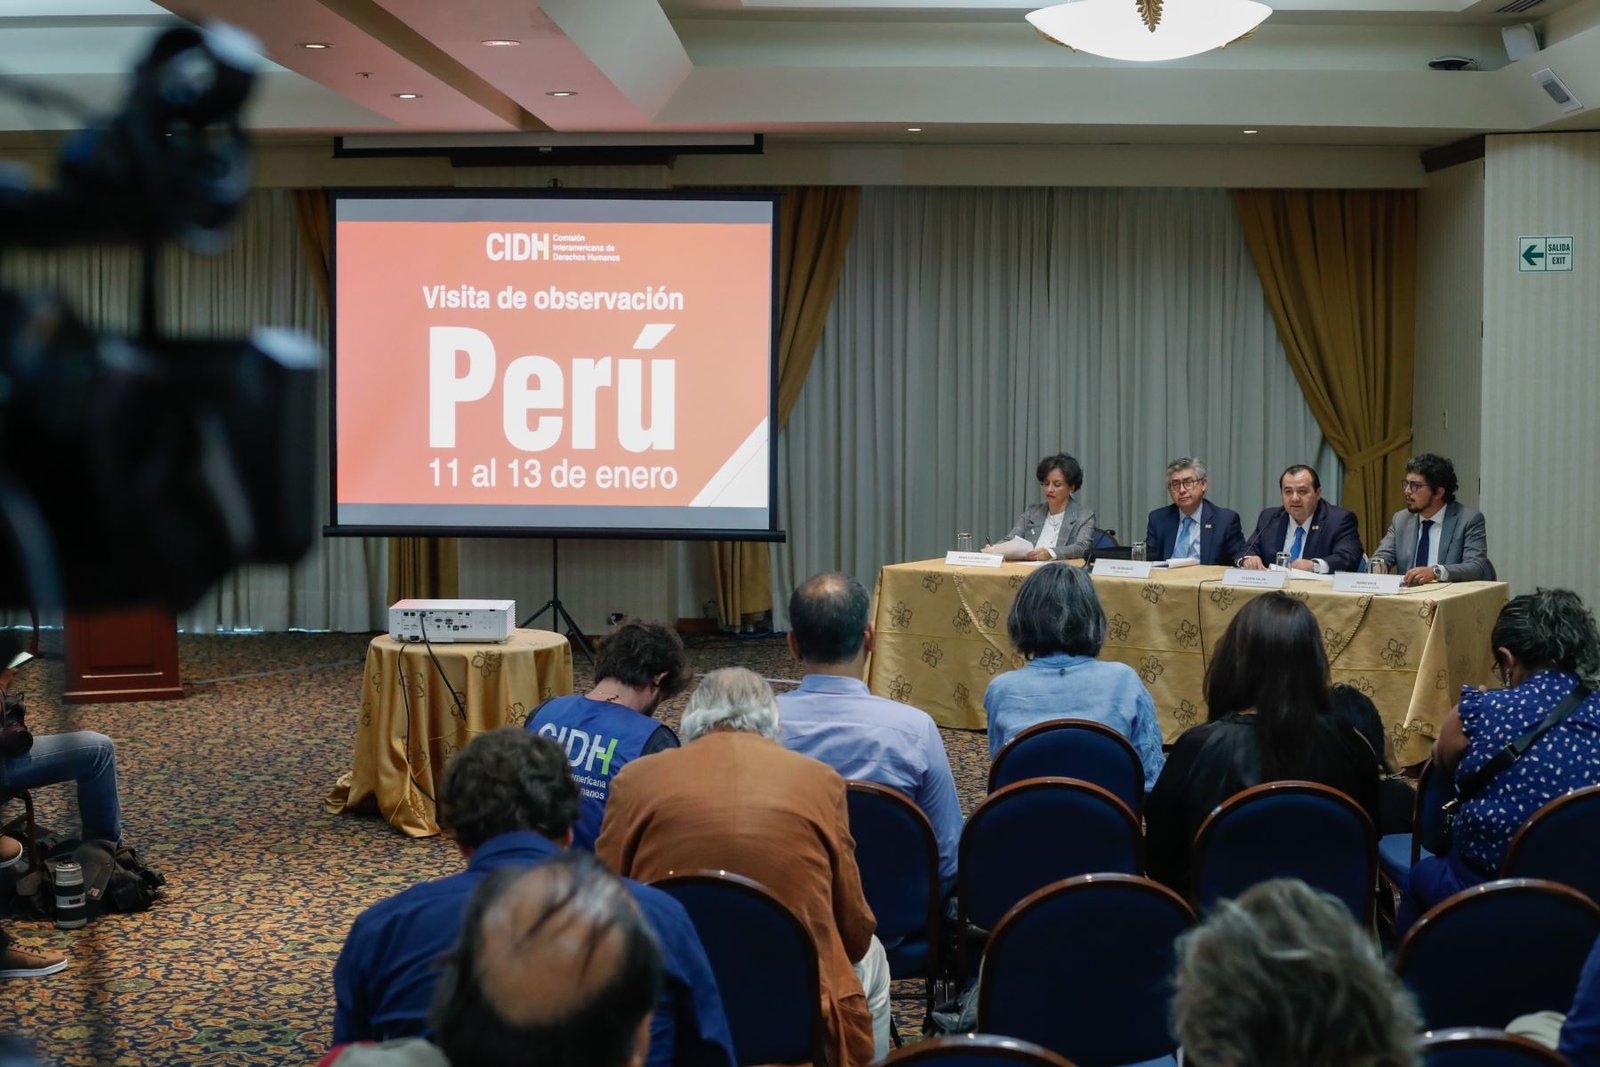 <strong>CIDH emitirá informe sobre situación del Perú dentro de 30 días</strong>